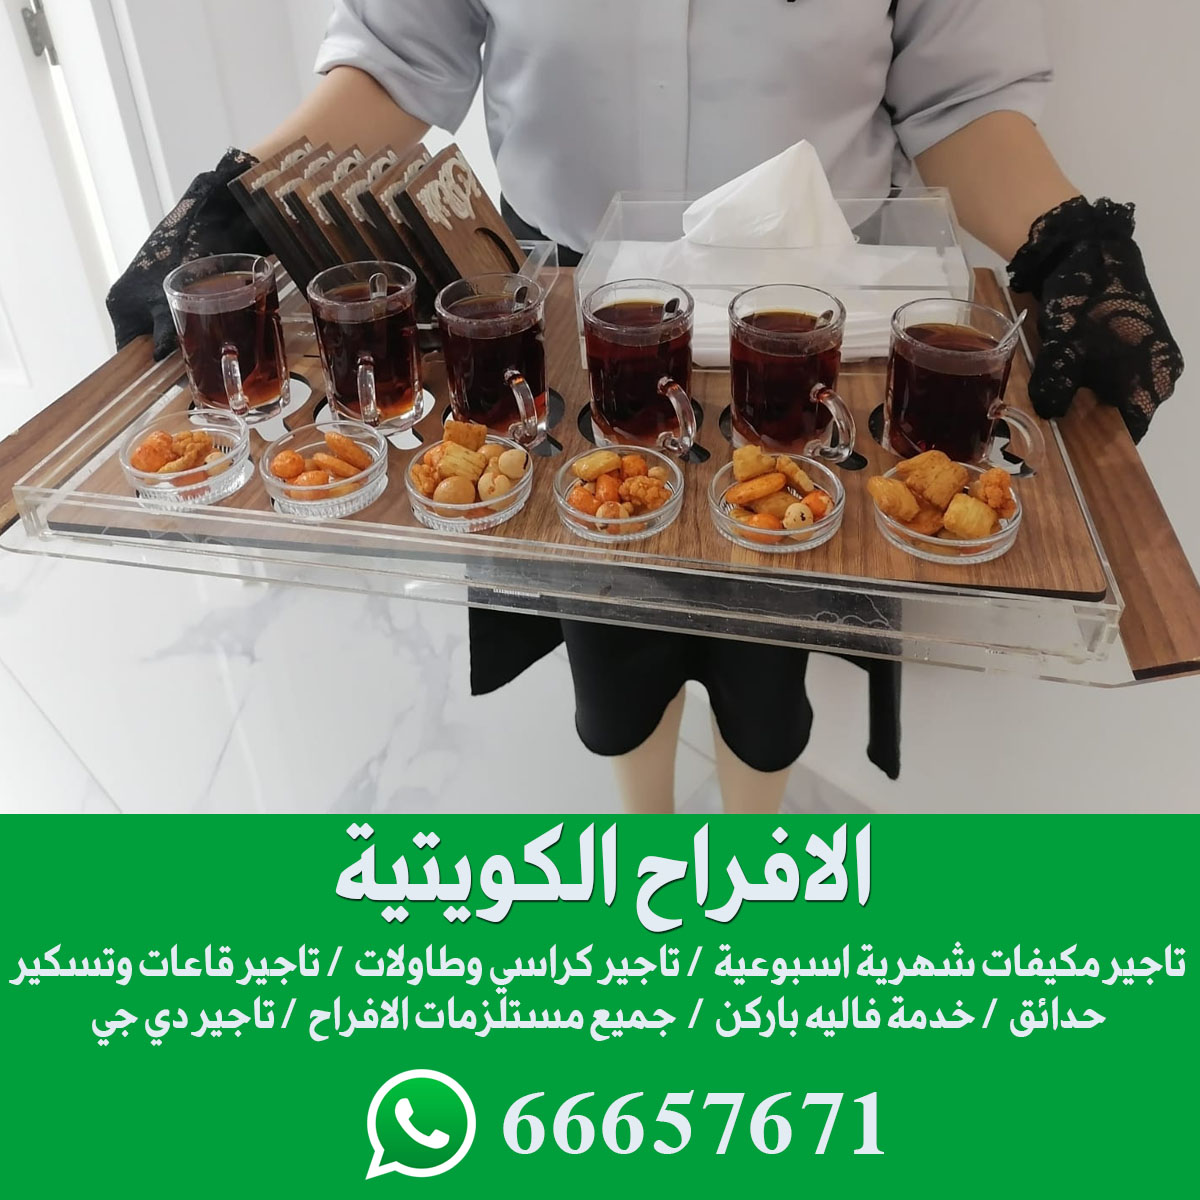 خدمة شاي وقهوه الكويت